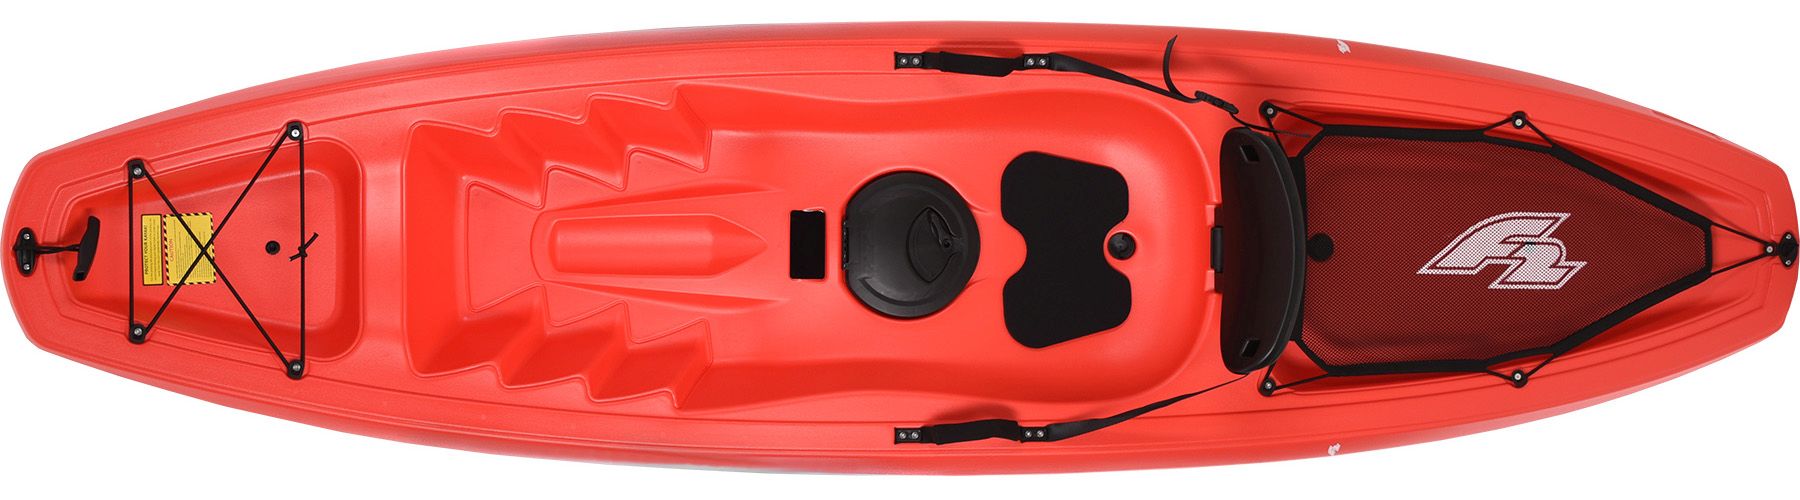 POFET 2pcs 140cm 55inch Kayak Paddelleine Angelrute Coiled Cord Holder Kajakfahren Kanufahren Bootfahren Surfzubehör